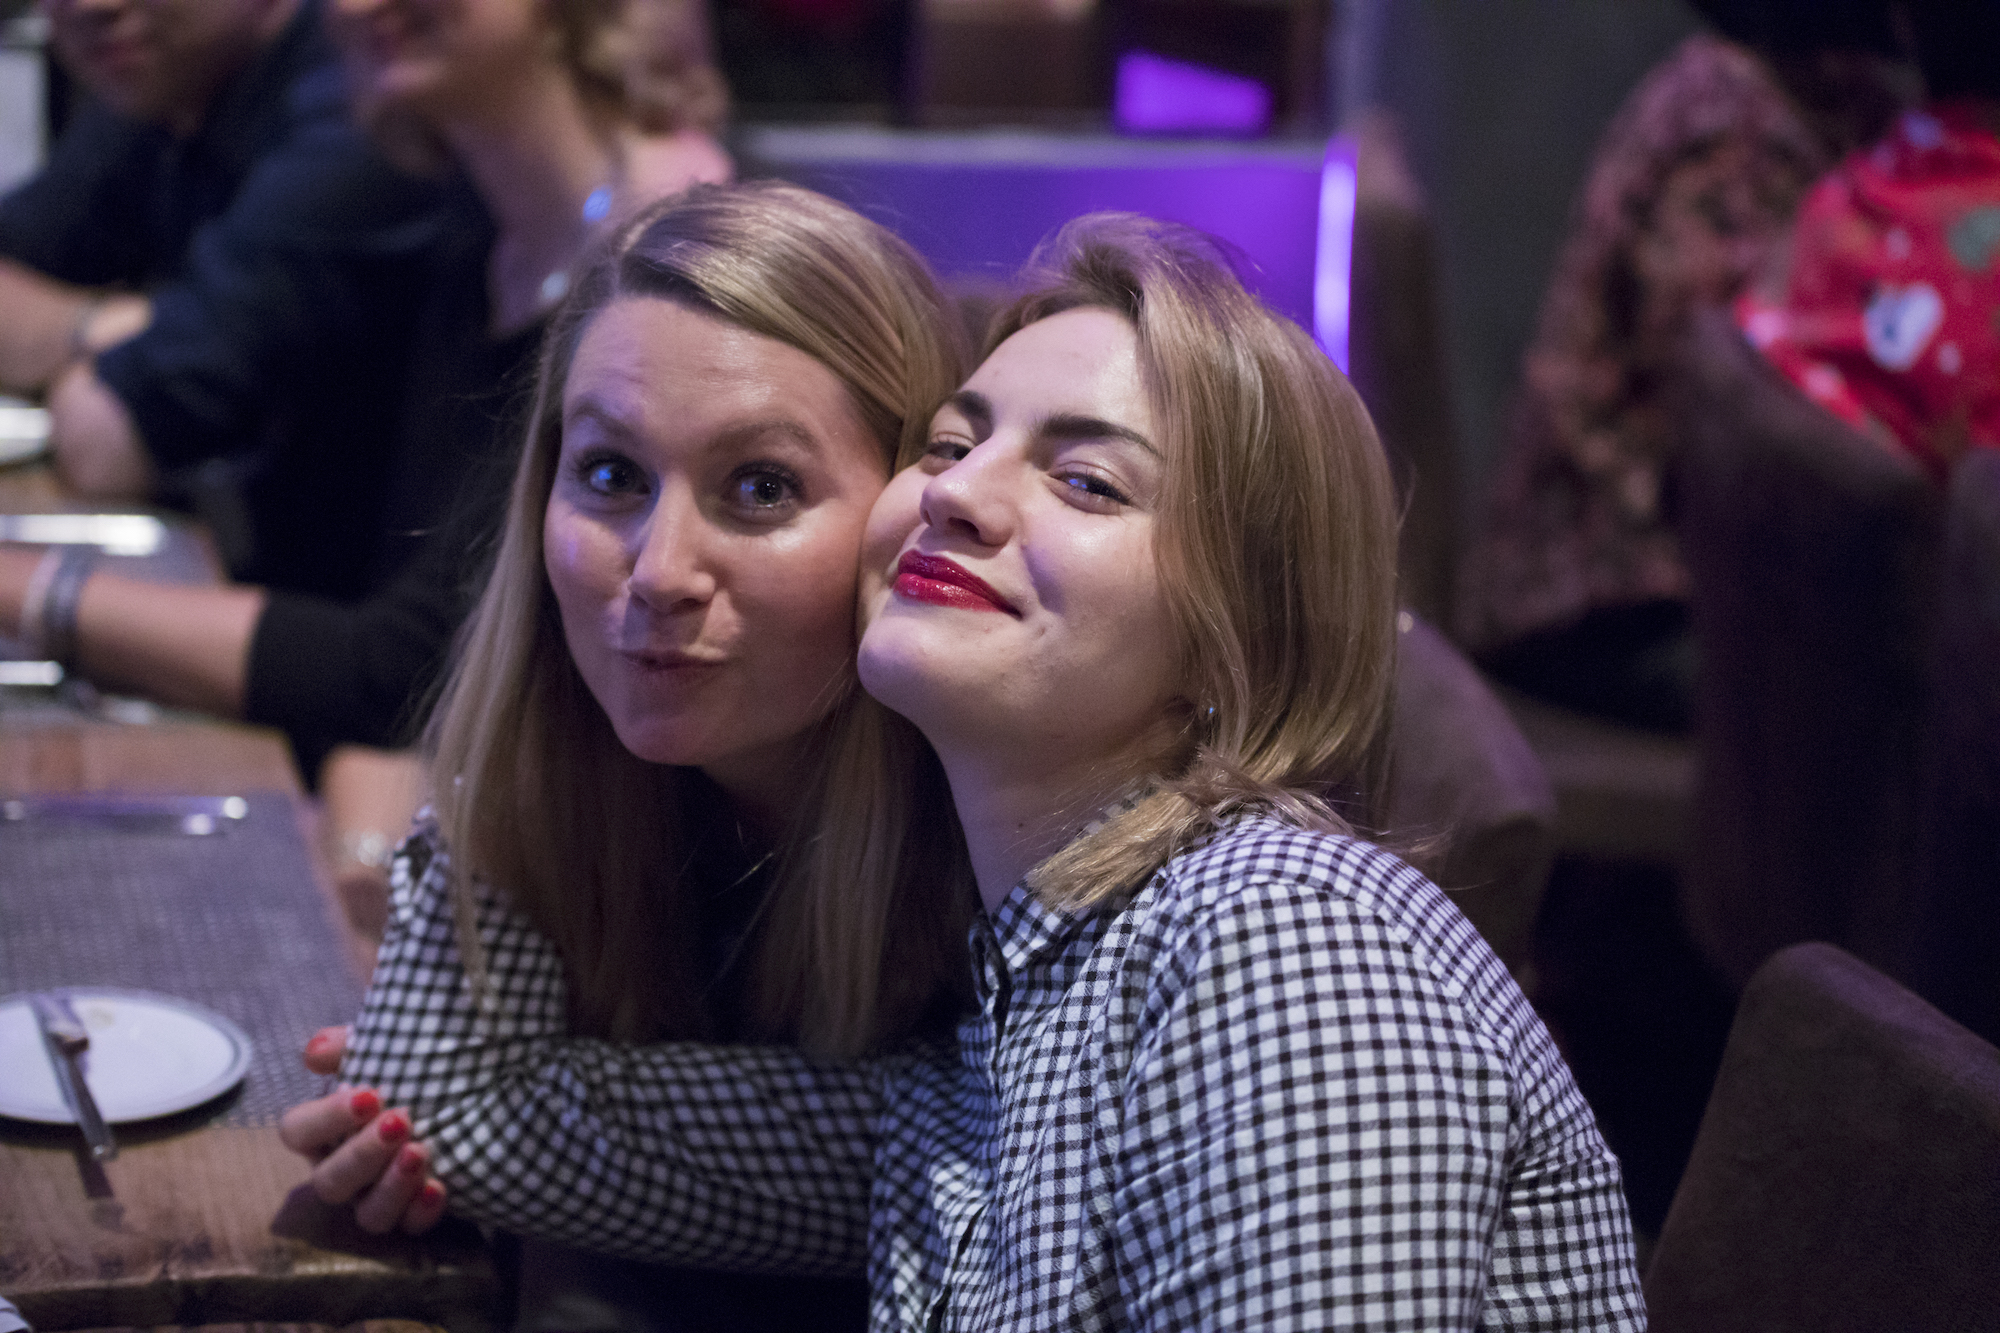 Zwei junge Frauen posieren gemeinsam vor der Kamera an einem Esstisch